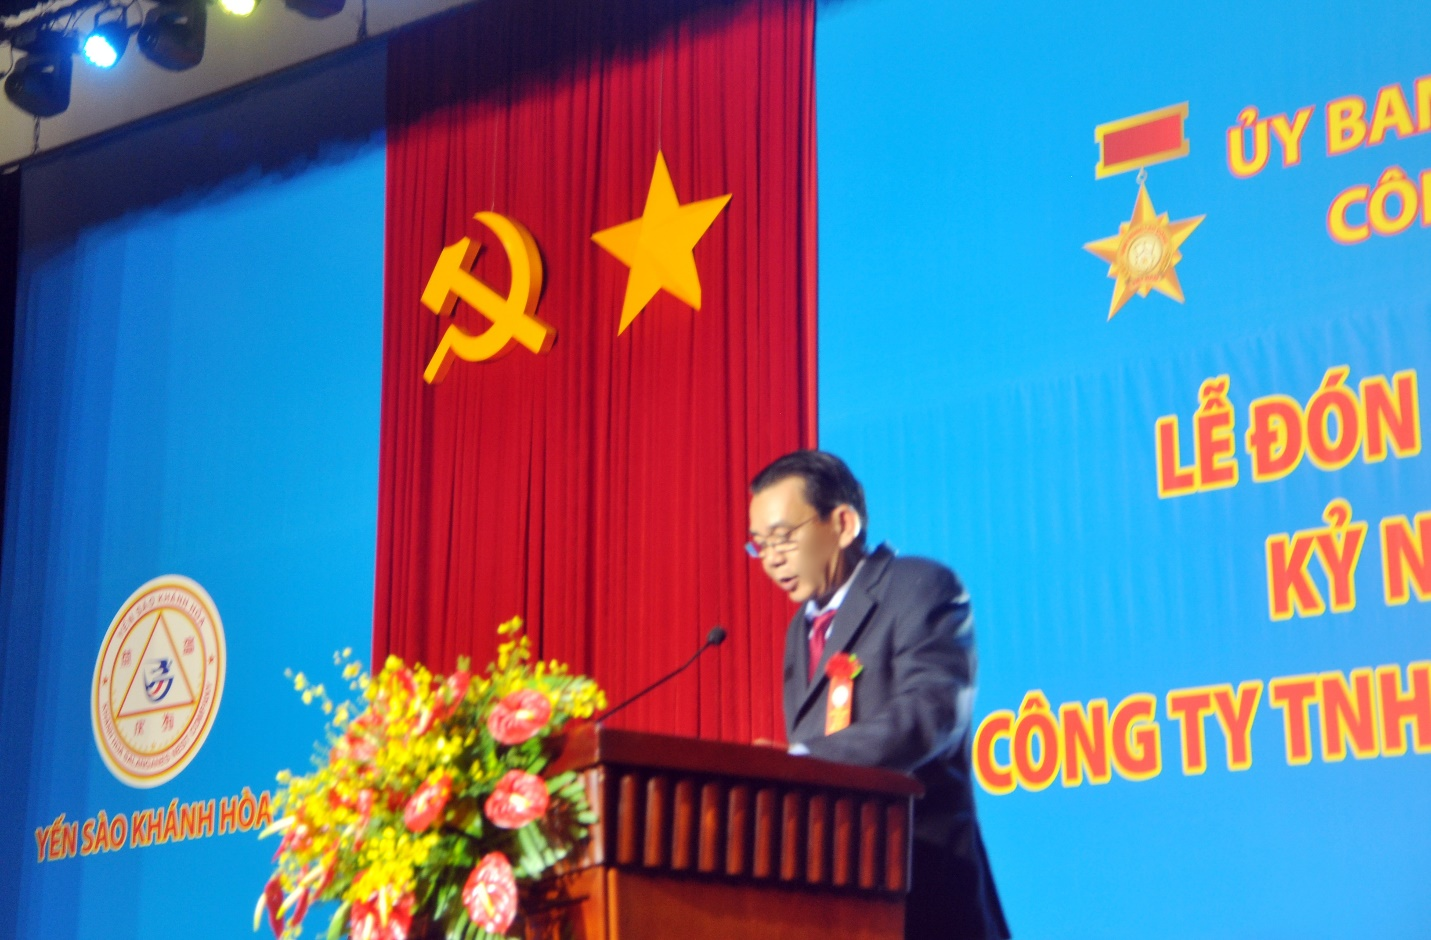 Ông Nguyễn Anh Hùng - Tổng Giám đốc Công ty Yến sào Khánh Hòa), Chủ tịch Hội đồng thành viên Công ty Yến sào Khánh Hòa phát biểu